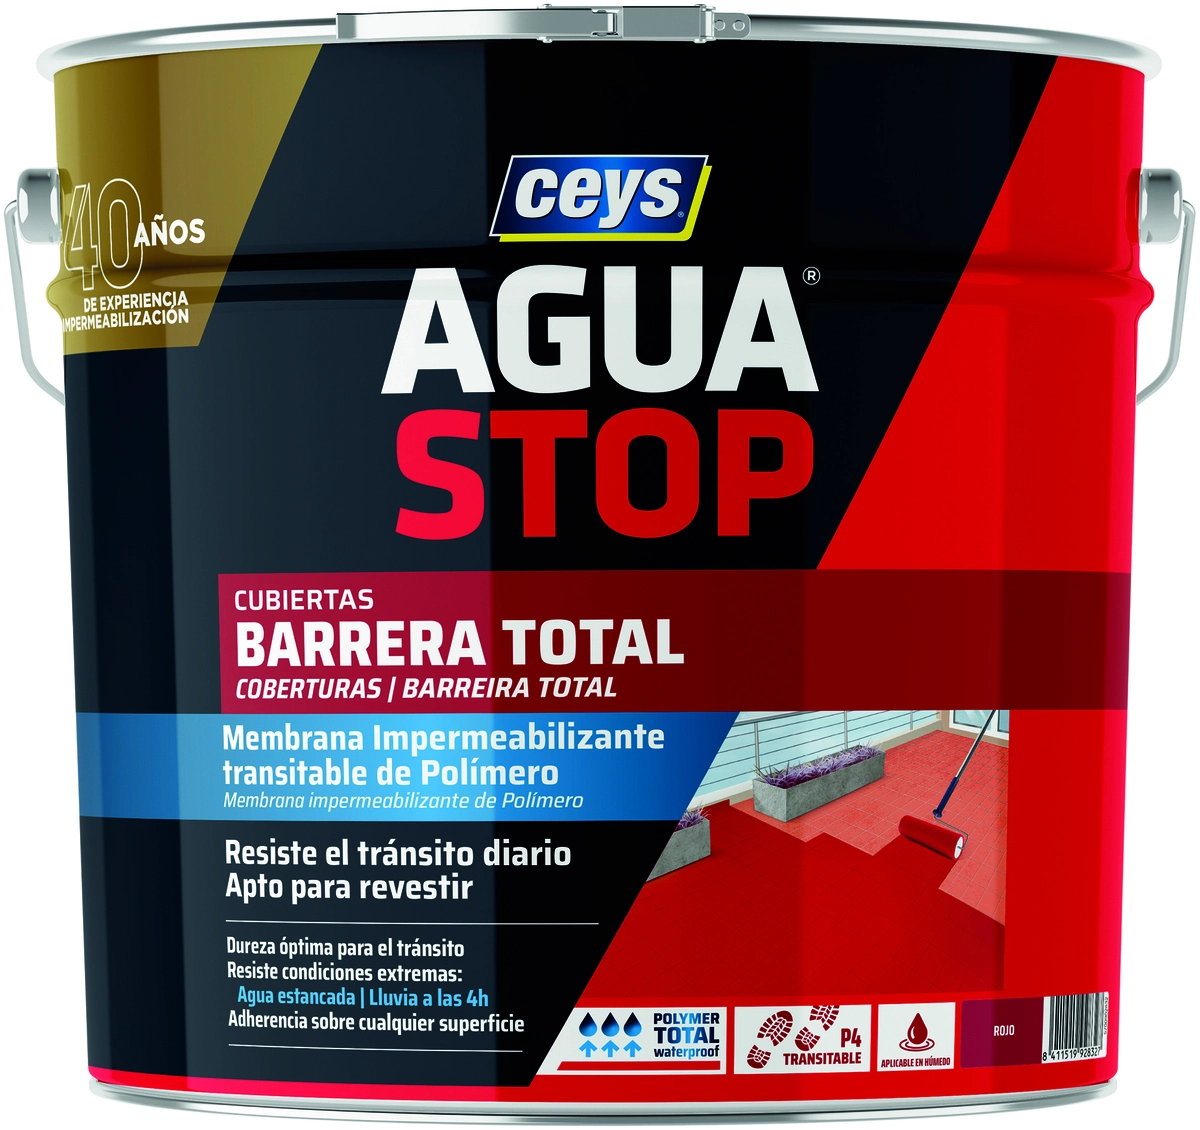 AGUASTOP Barrera Total - Ceys